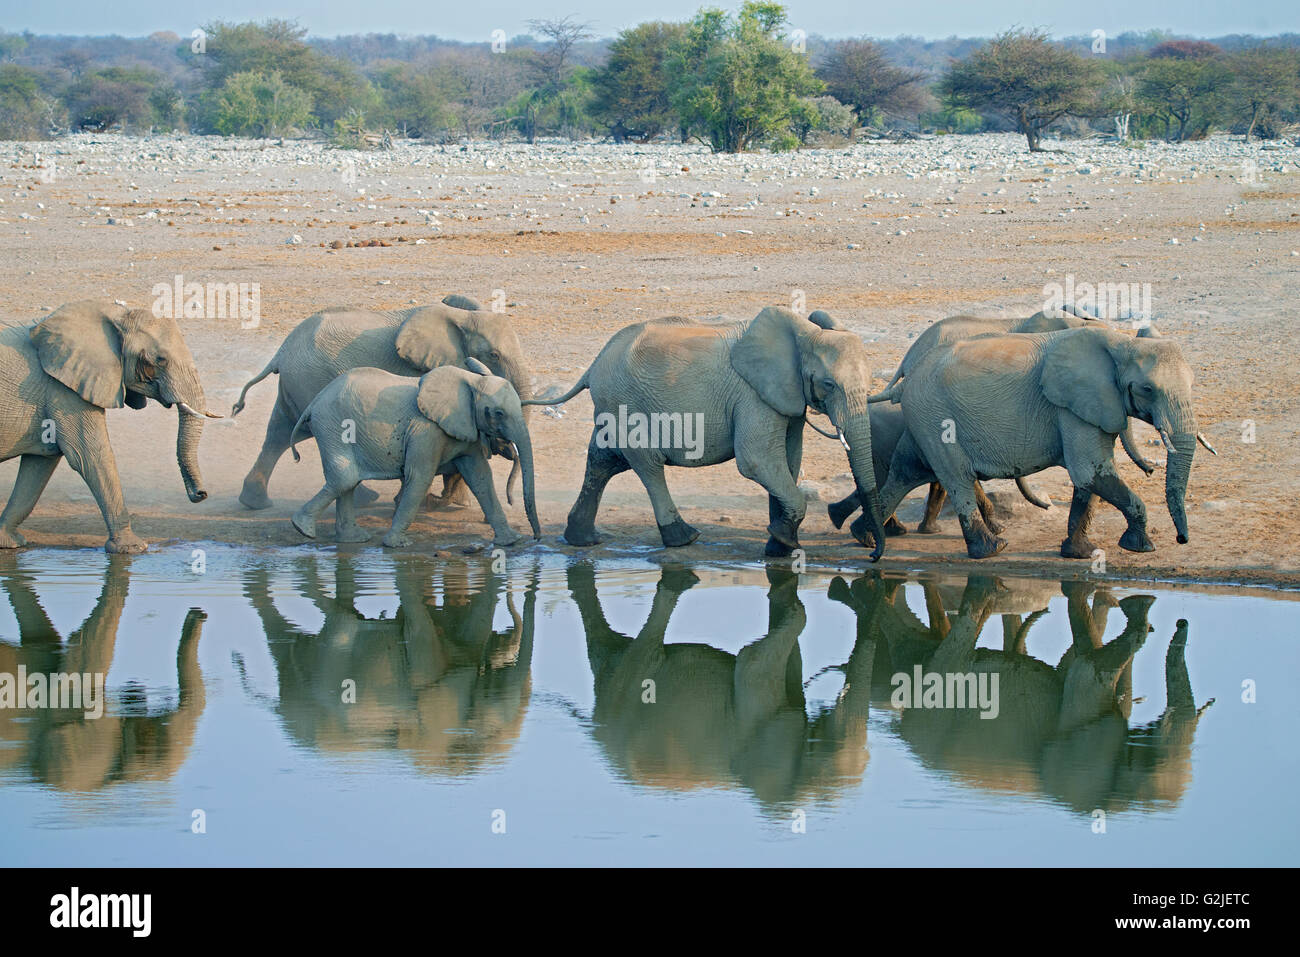 Afrikanischer Elefant (Loxodonta Africana) Familie kommen, um ein Wasserloch zu trinken, Etosha Nationalpark, Namibia, Südliches Afrika Stockfoto